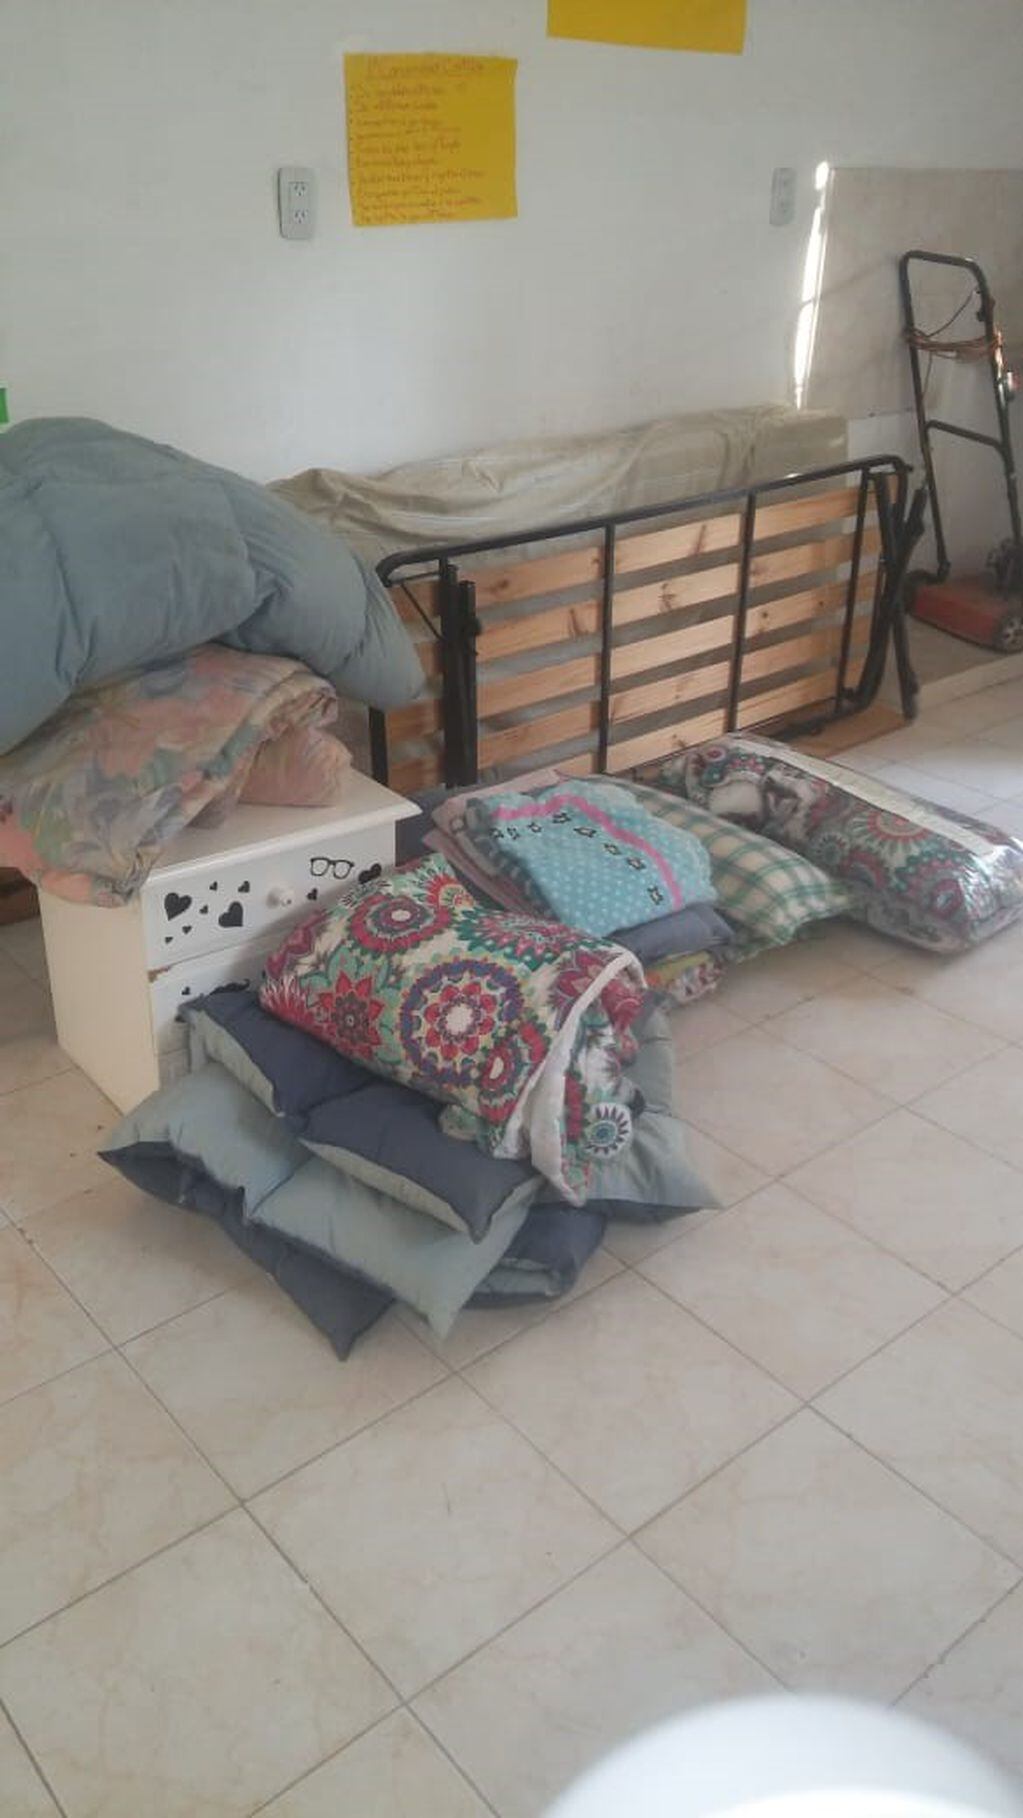 La Calera: donaciones de camas , colchones, sábanas, acolchados.